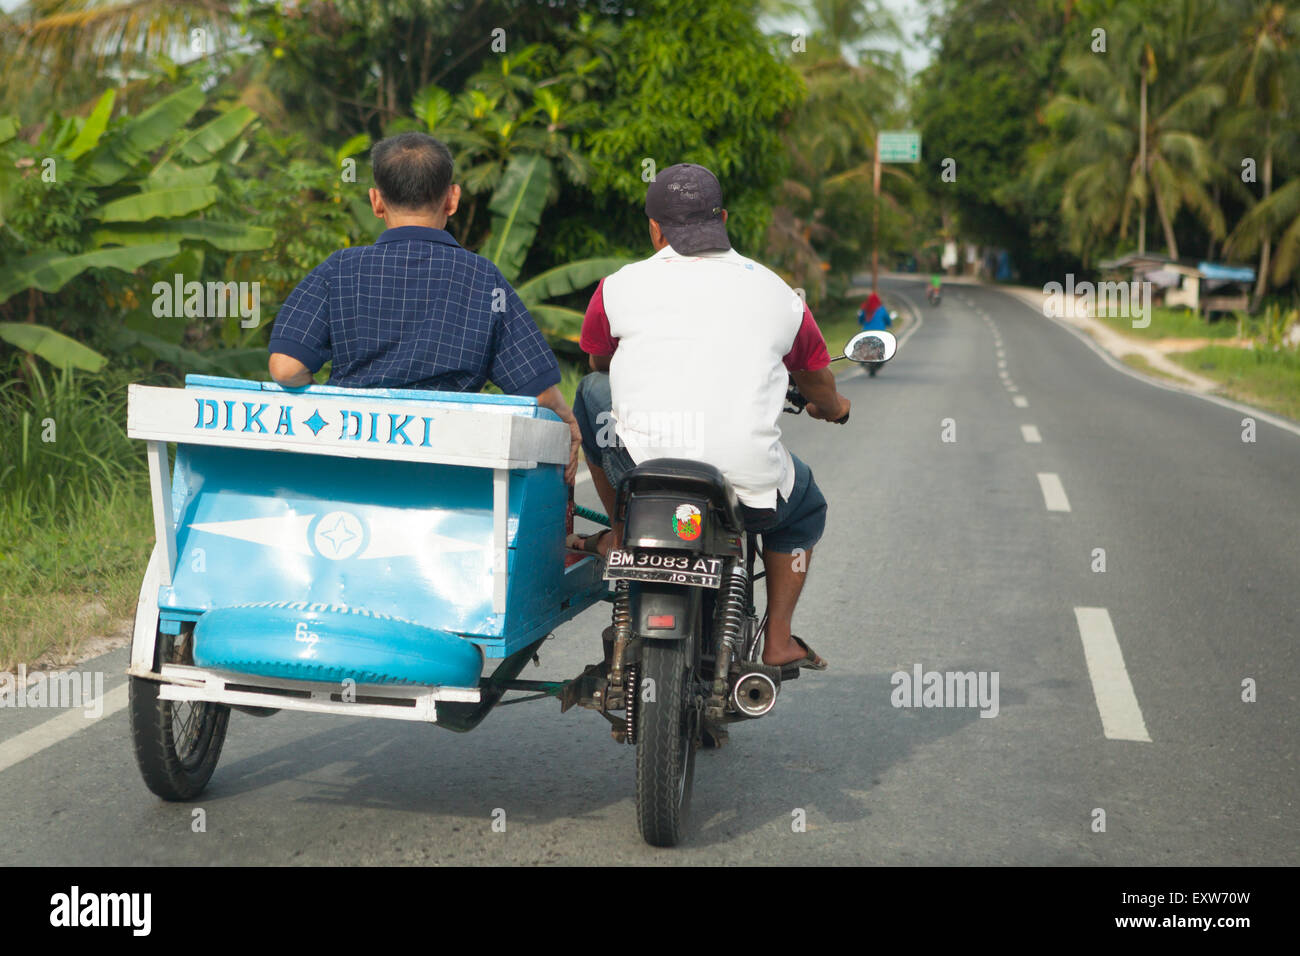 Ein Autofahrer befördert einen Passagier auf einem Motorrad mit Beiwagen, während er auf einer Straße am Stadtrand von Pekanbaru in Riau, Indonesien, fährt. Stockfoto